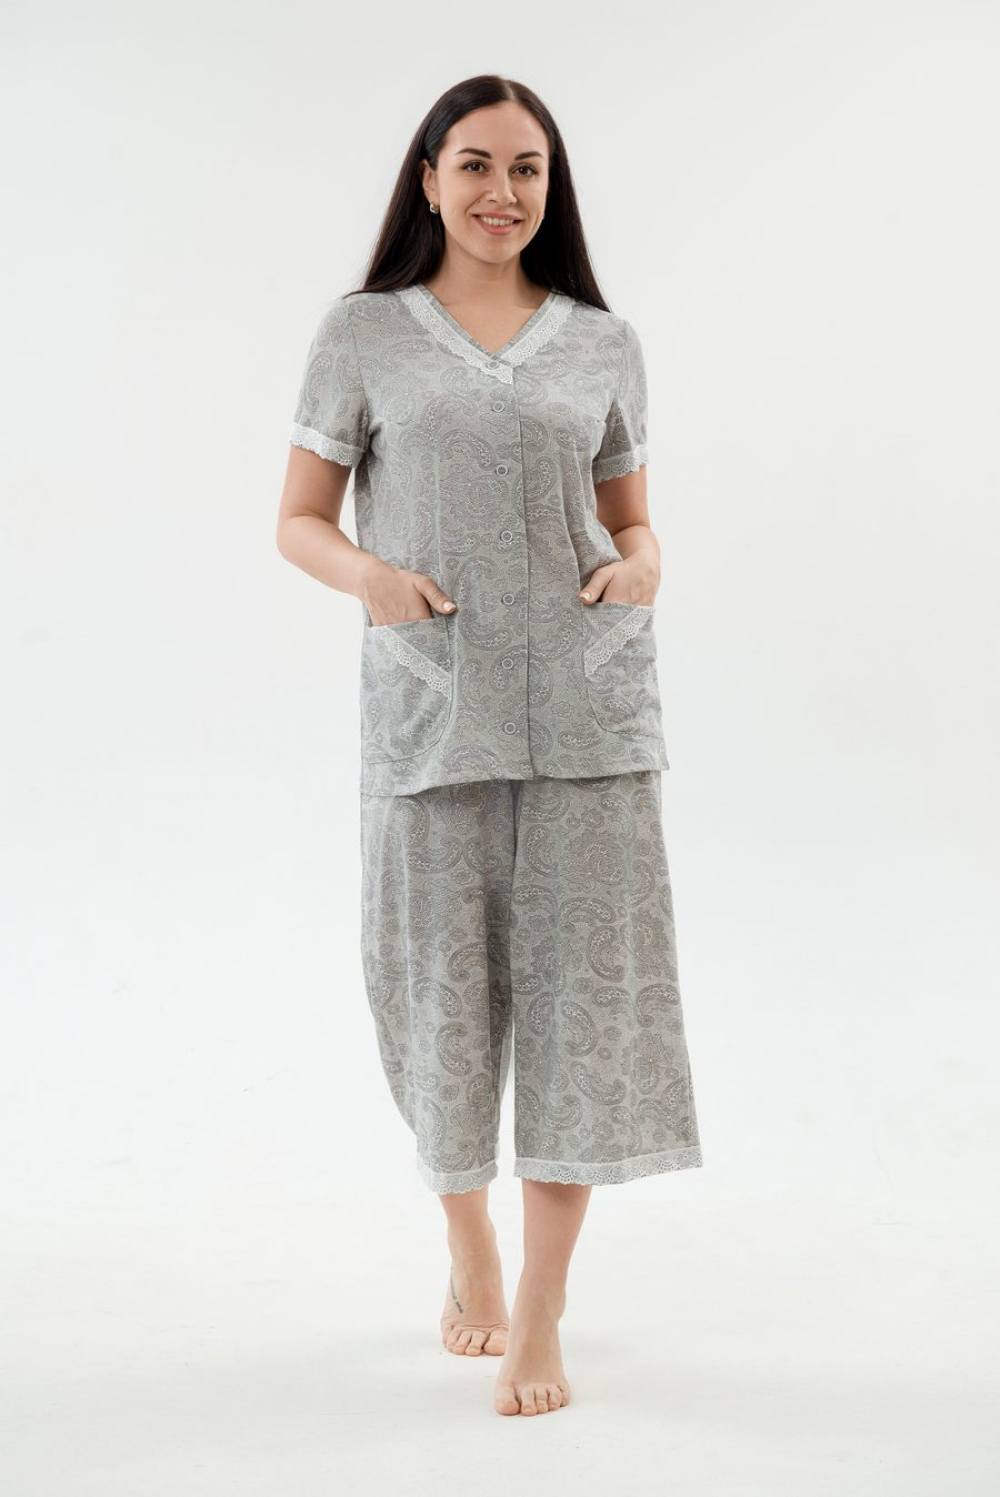 Пижама женская с бриджами. Артикул 000005447